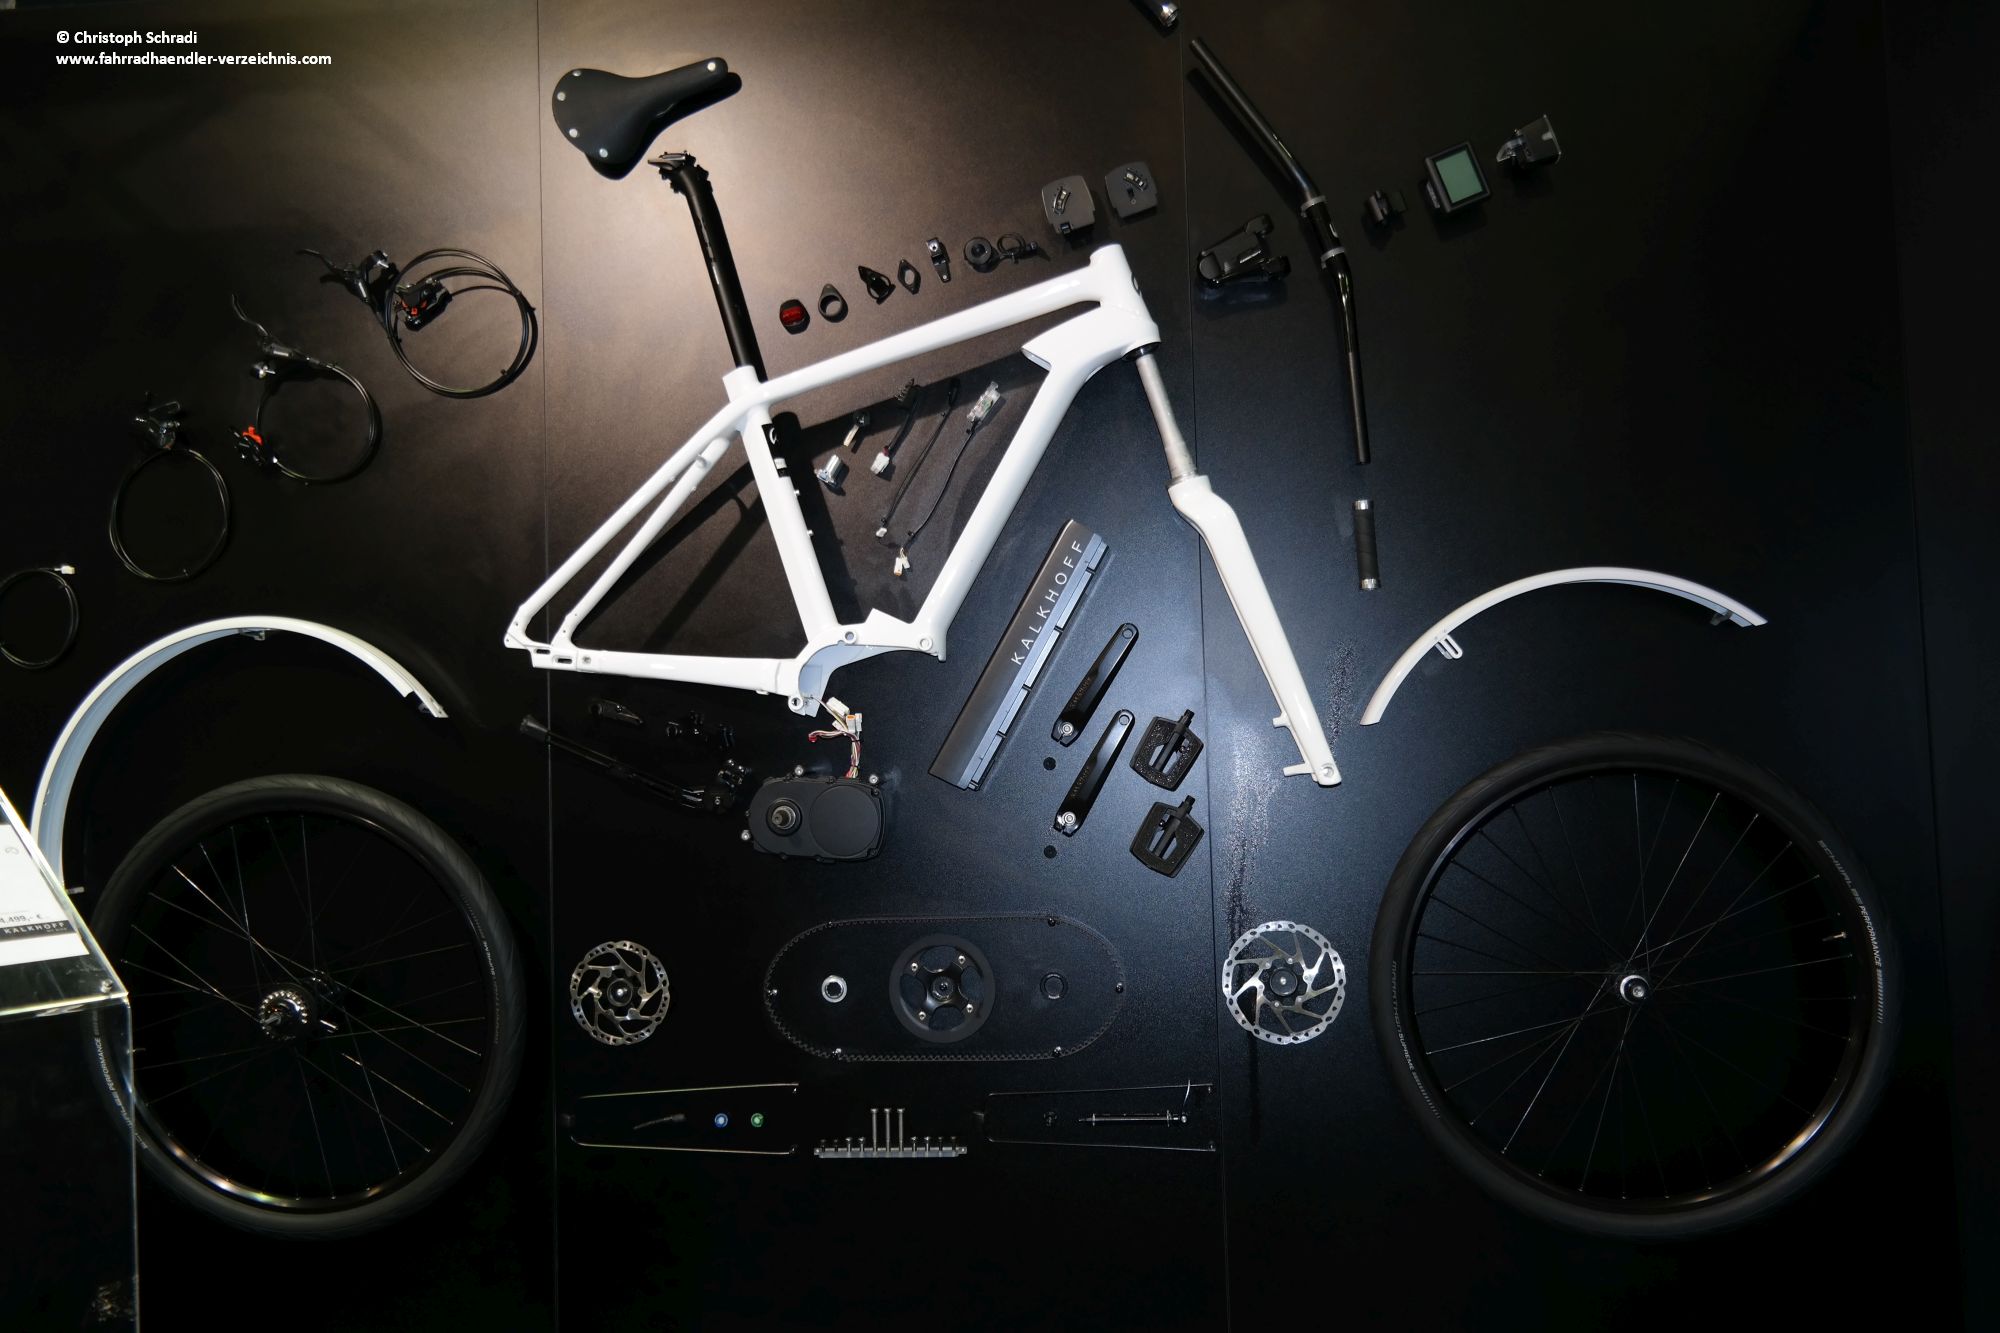 Fahrradkomponenten sind Teile wie Bremsen, Lager, Lenker etc. welche an jedem Fahrrad angebracht sind damit funktioniert